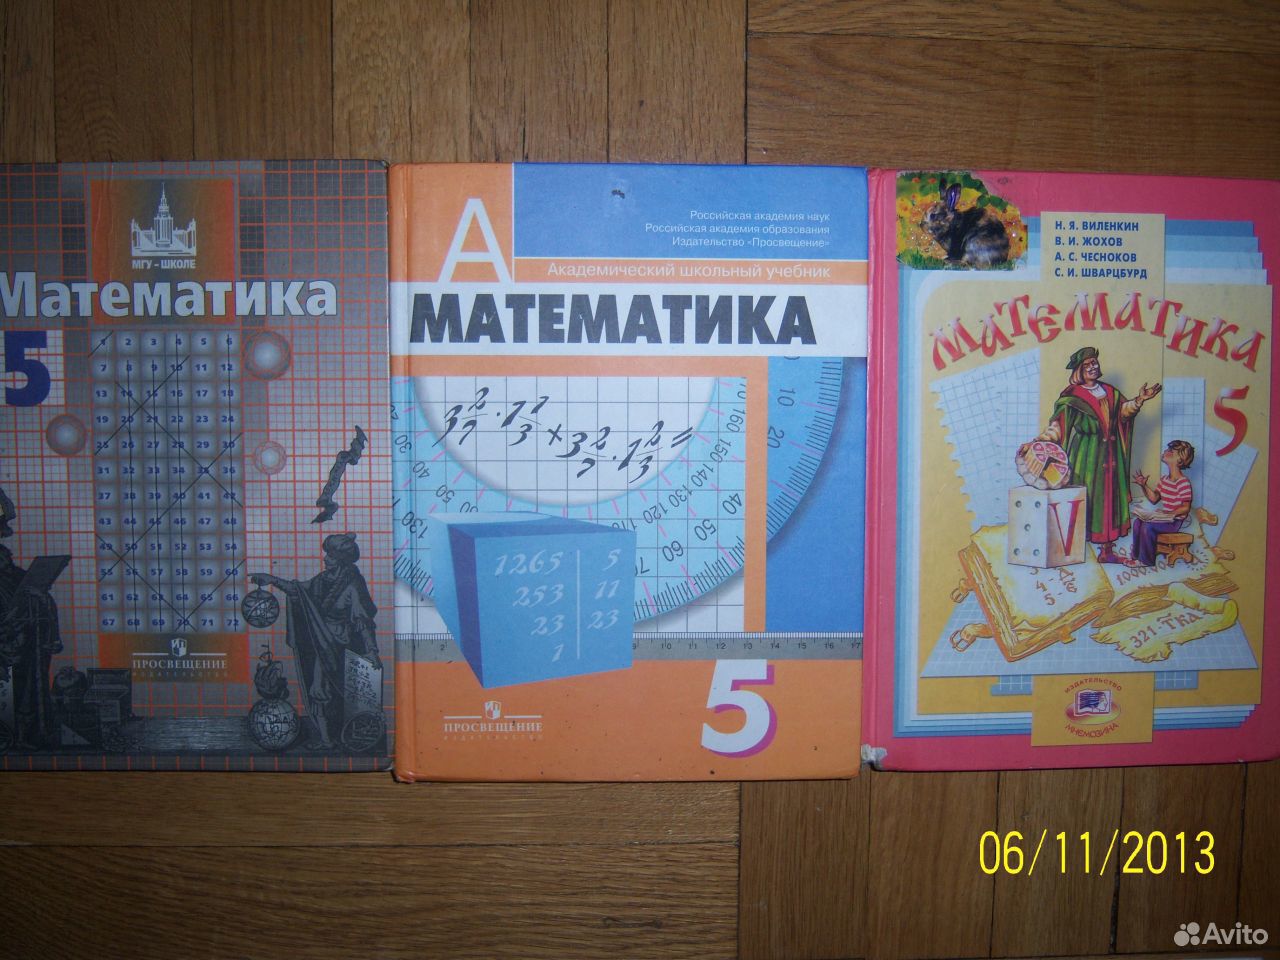 Математика 5 класс школа номер 30. Математика 5 класс учебник. Учебники 5 класс. Учебники по математике 5коасс. Книга математика 5 класс.